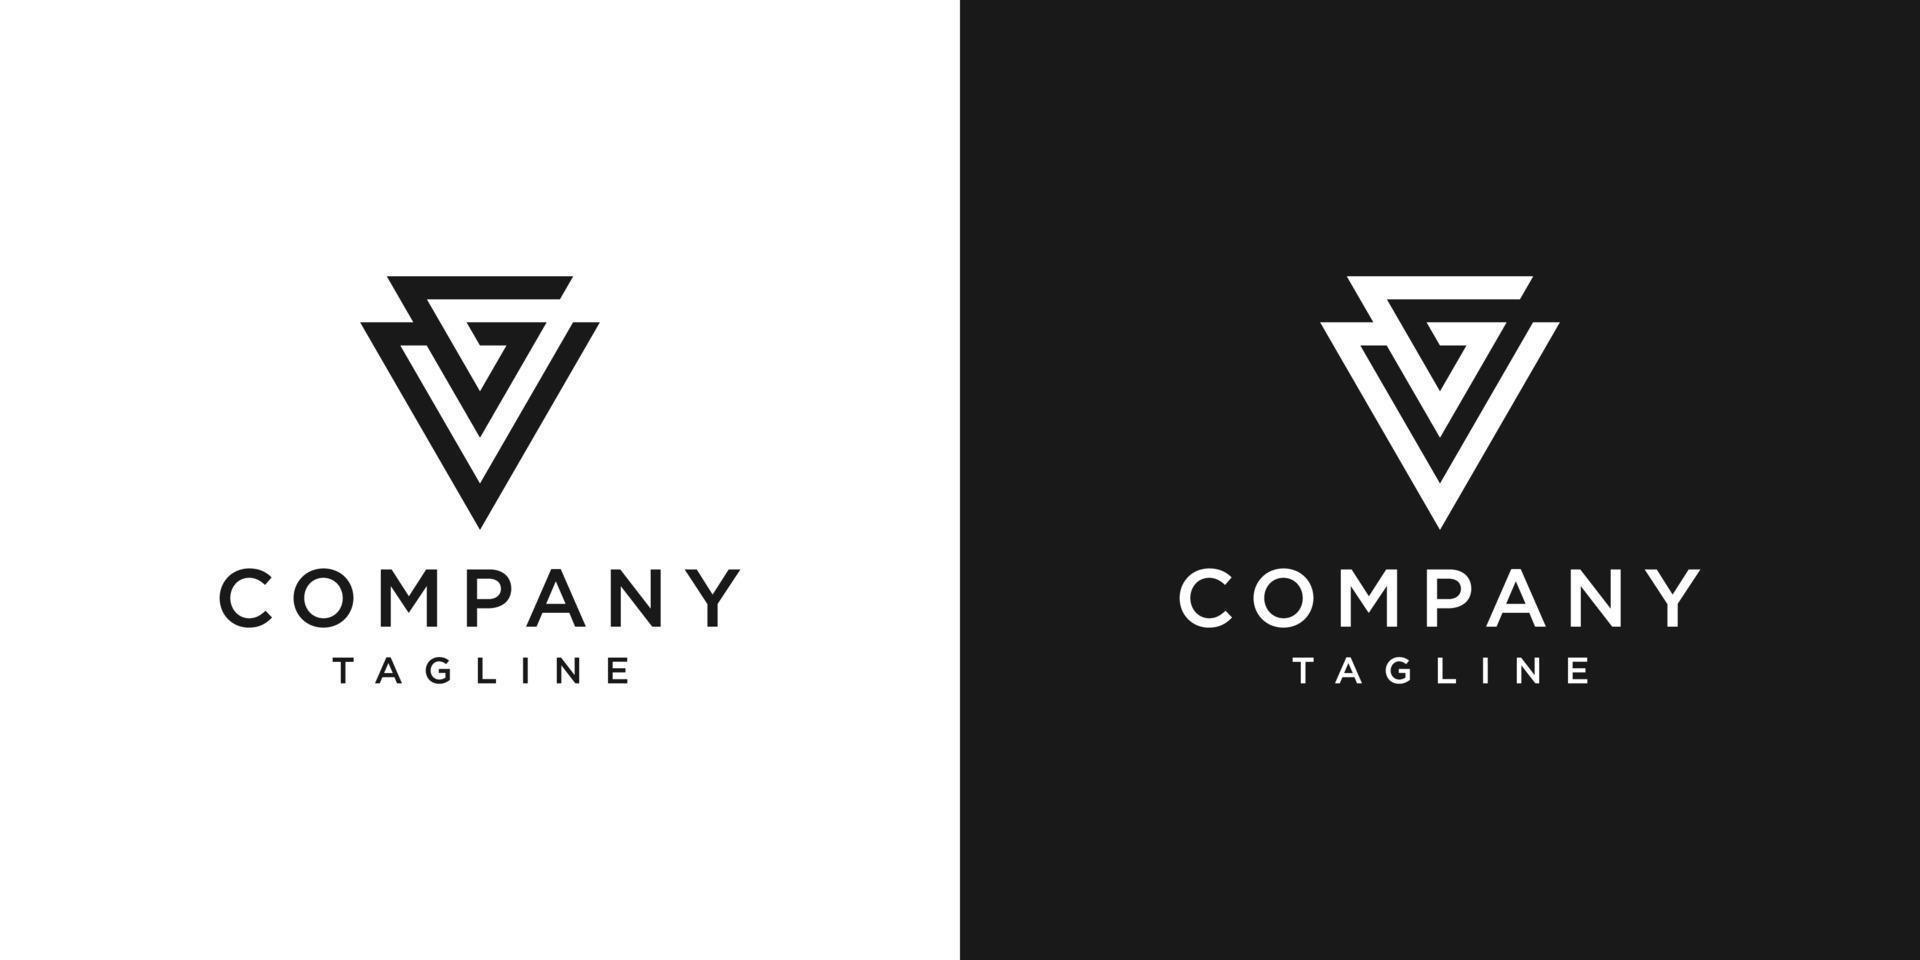 lettre créative gv monogramme logo design icône modèle fond blanc et noir vecteur